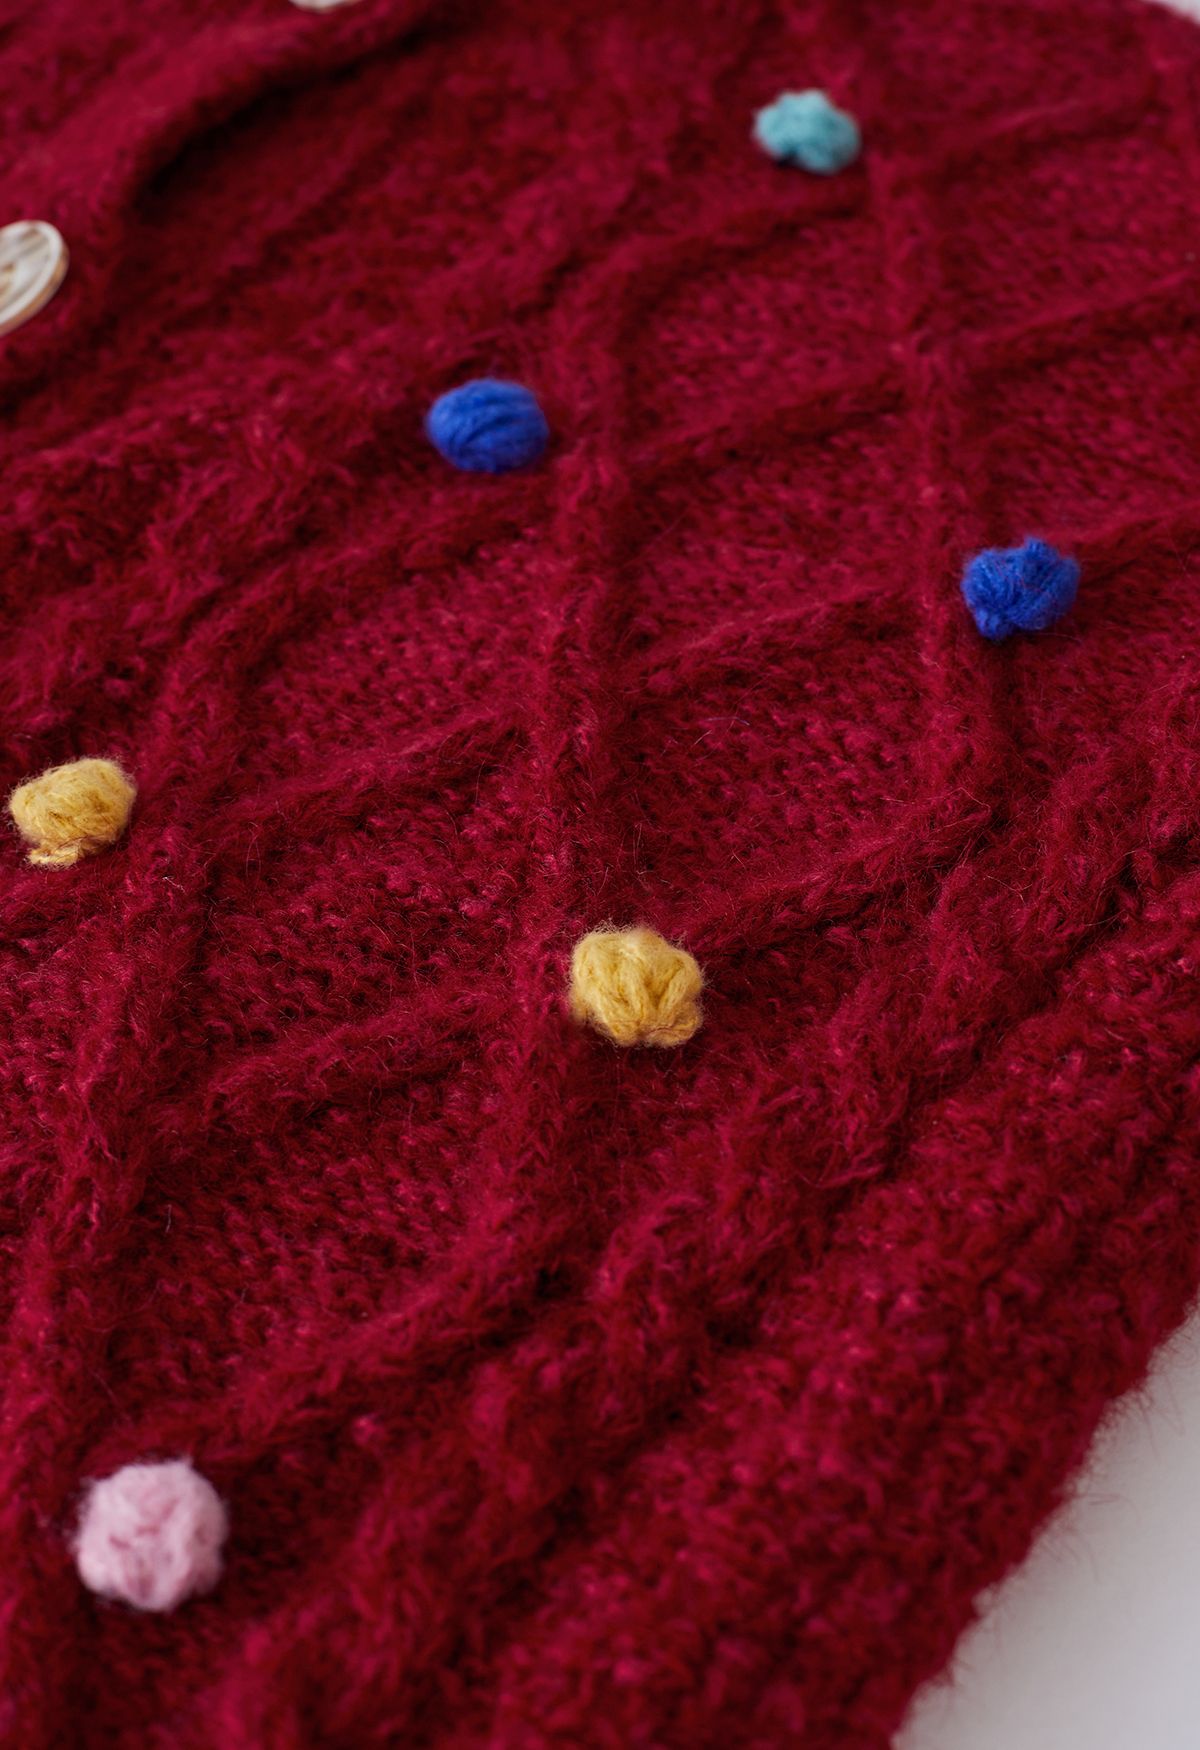 Cardigan in maglia a rombi con pompon colorato in rosso